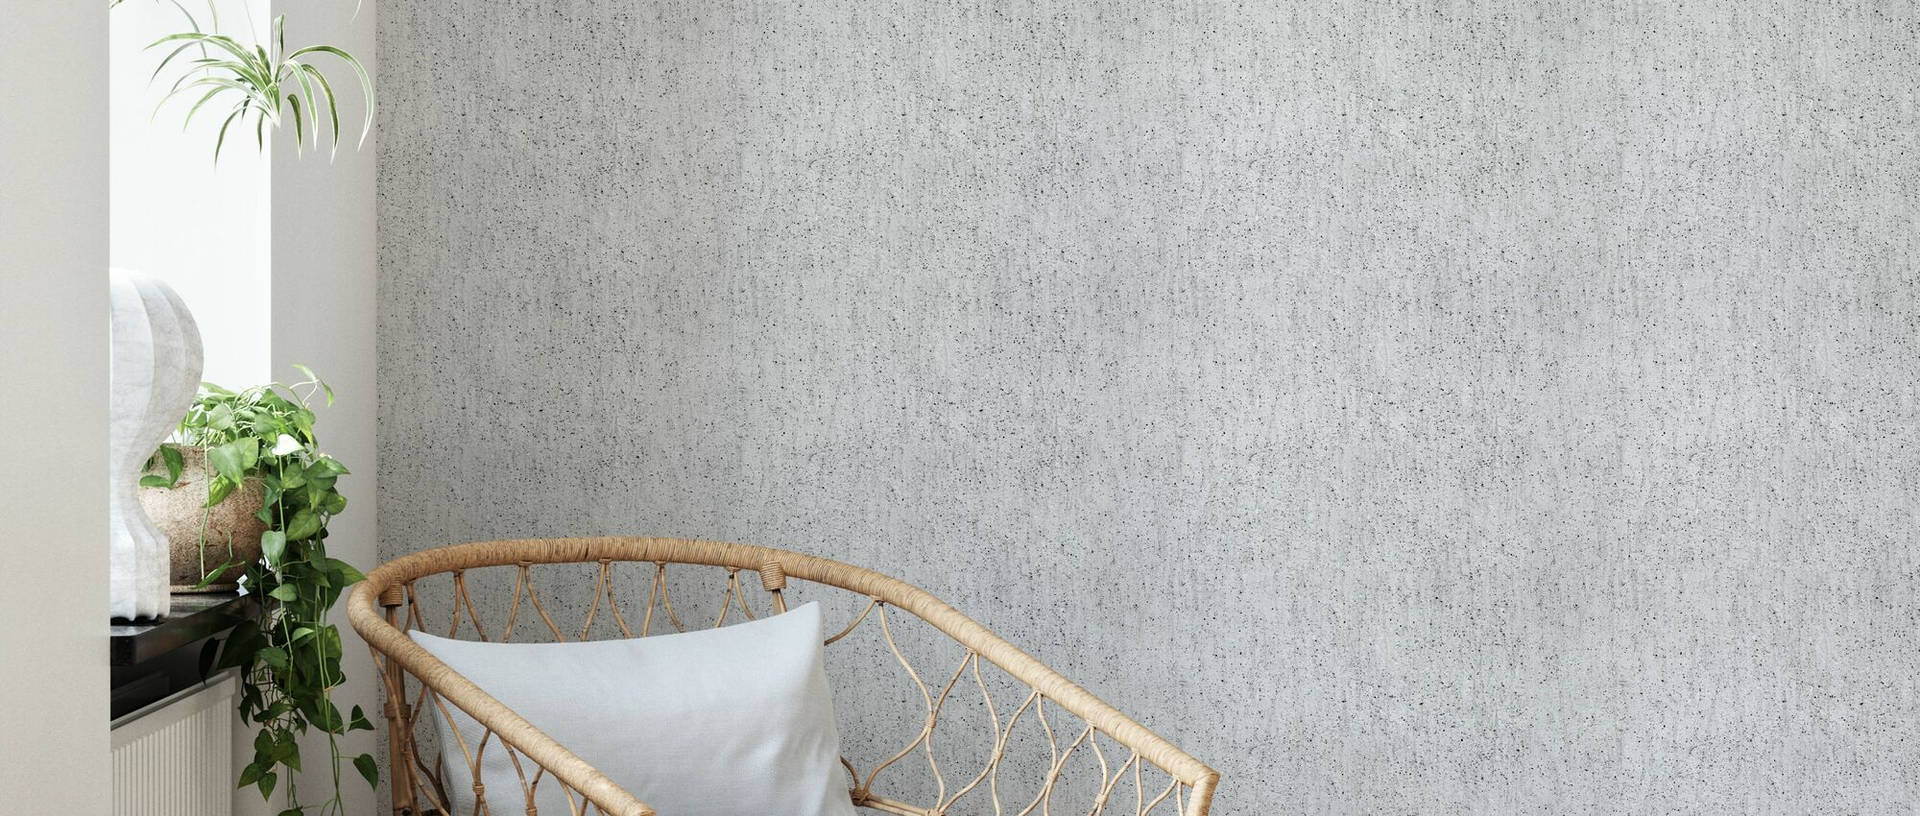 Indoor Concrete Wall Texture Wallpaper